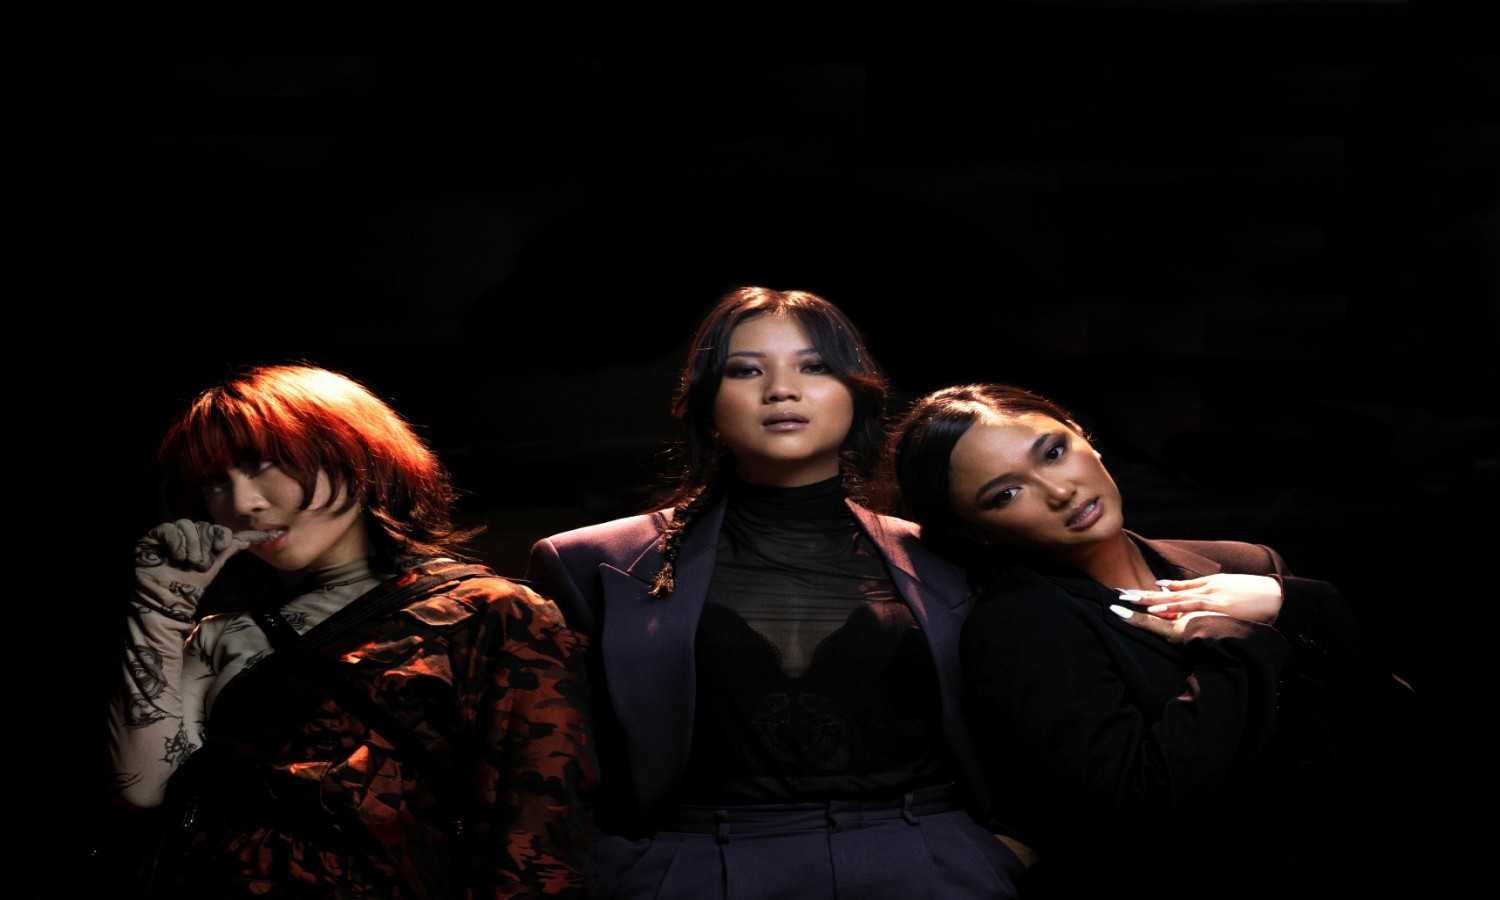 Tiga Musisi Wanita Angkat Isu Perempuan Dalam Single "Don't Touch Me"